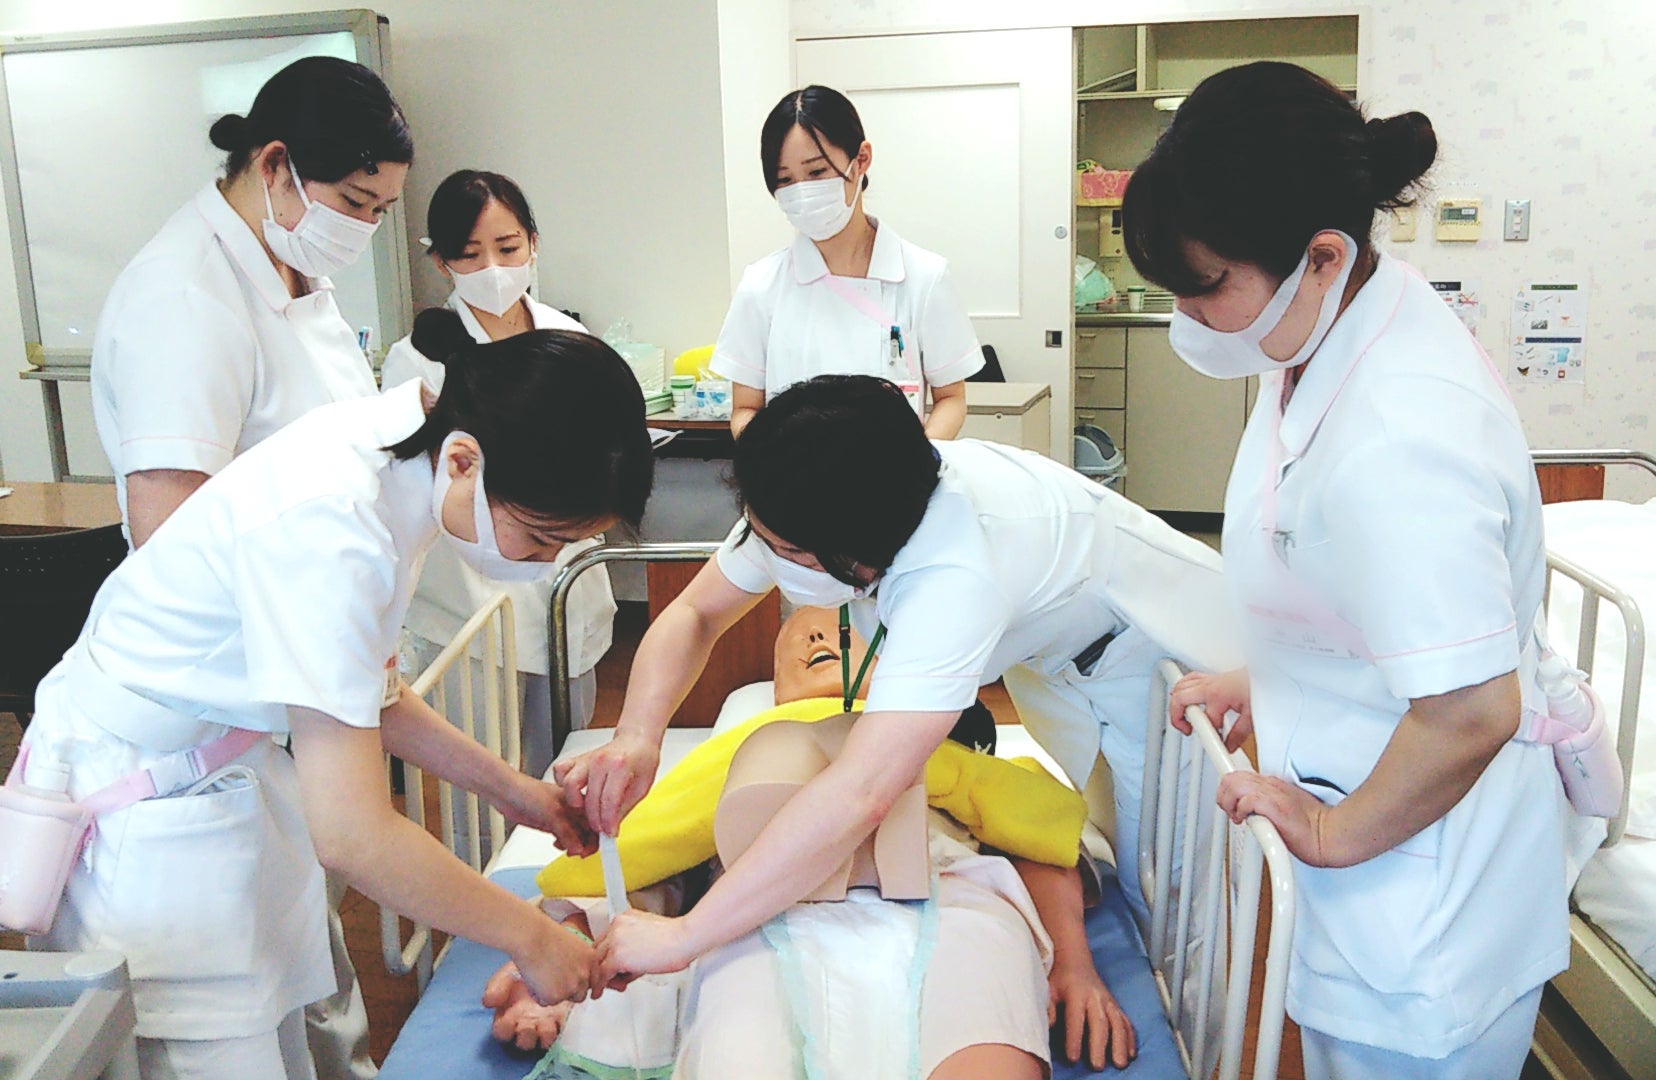 新人研修 導尿 膀胱留置カテーテル 社会医療法人 有隣会 東大阪病院 看護部 大阪の看護師求人 看護師転職